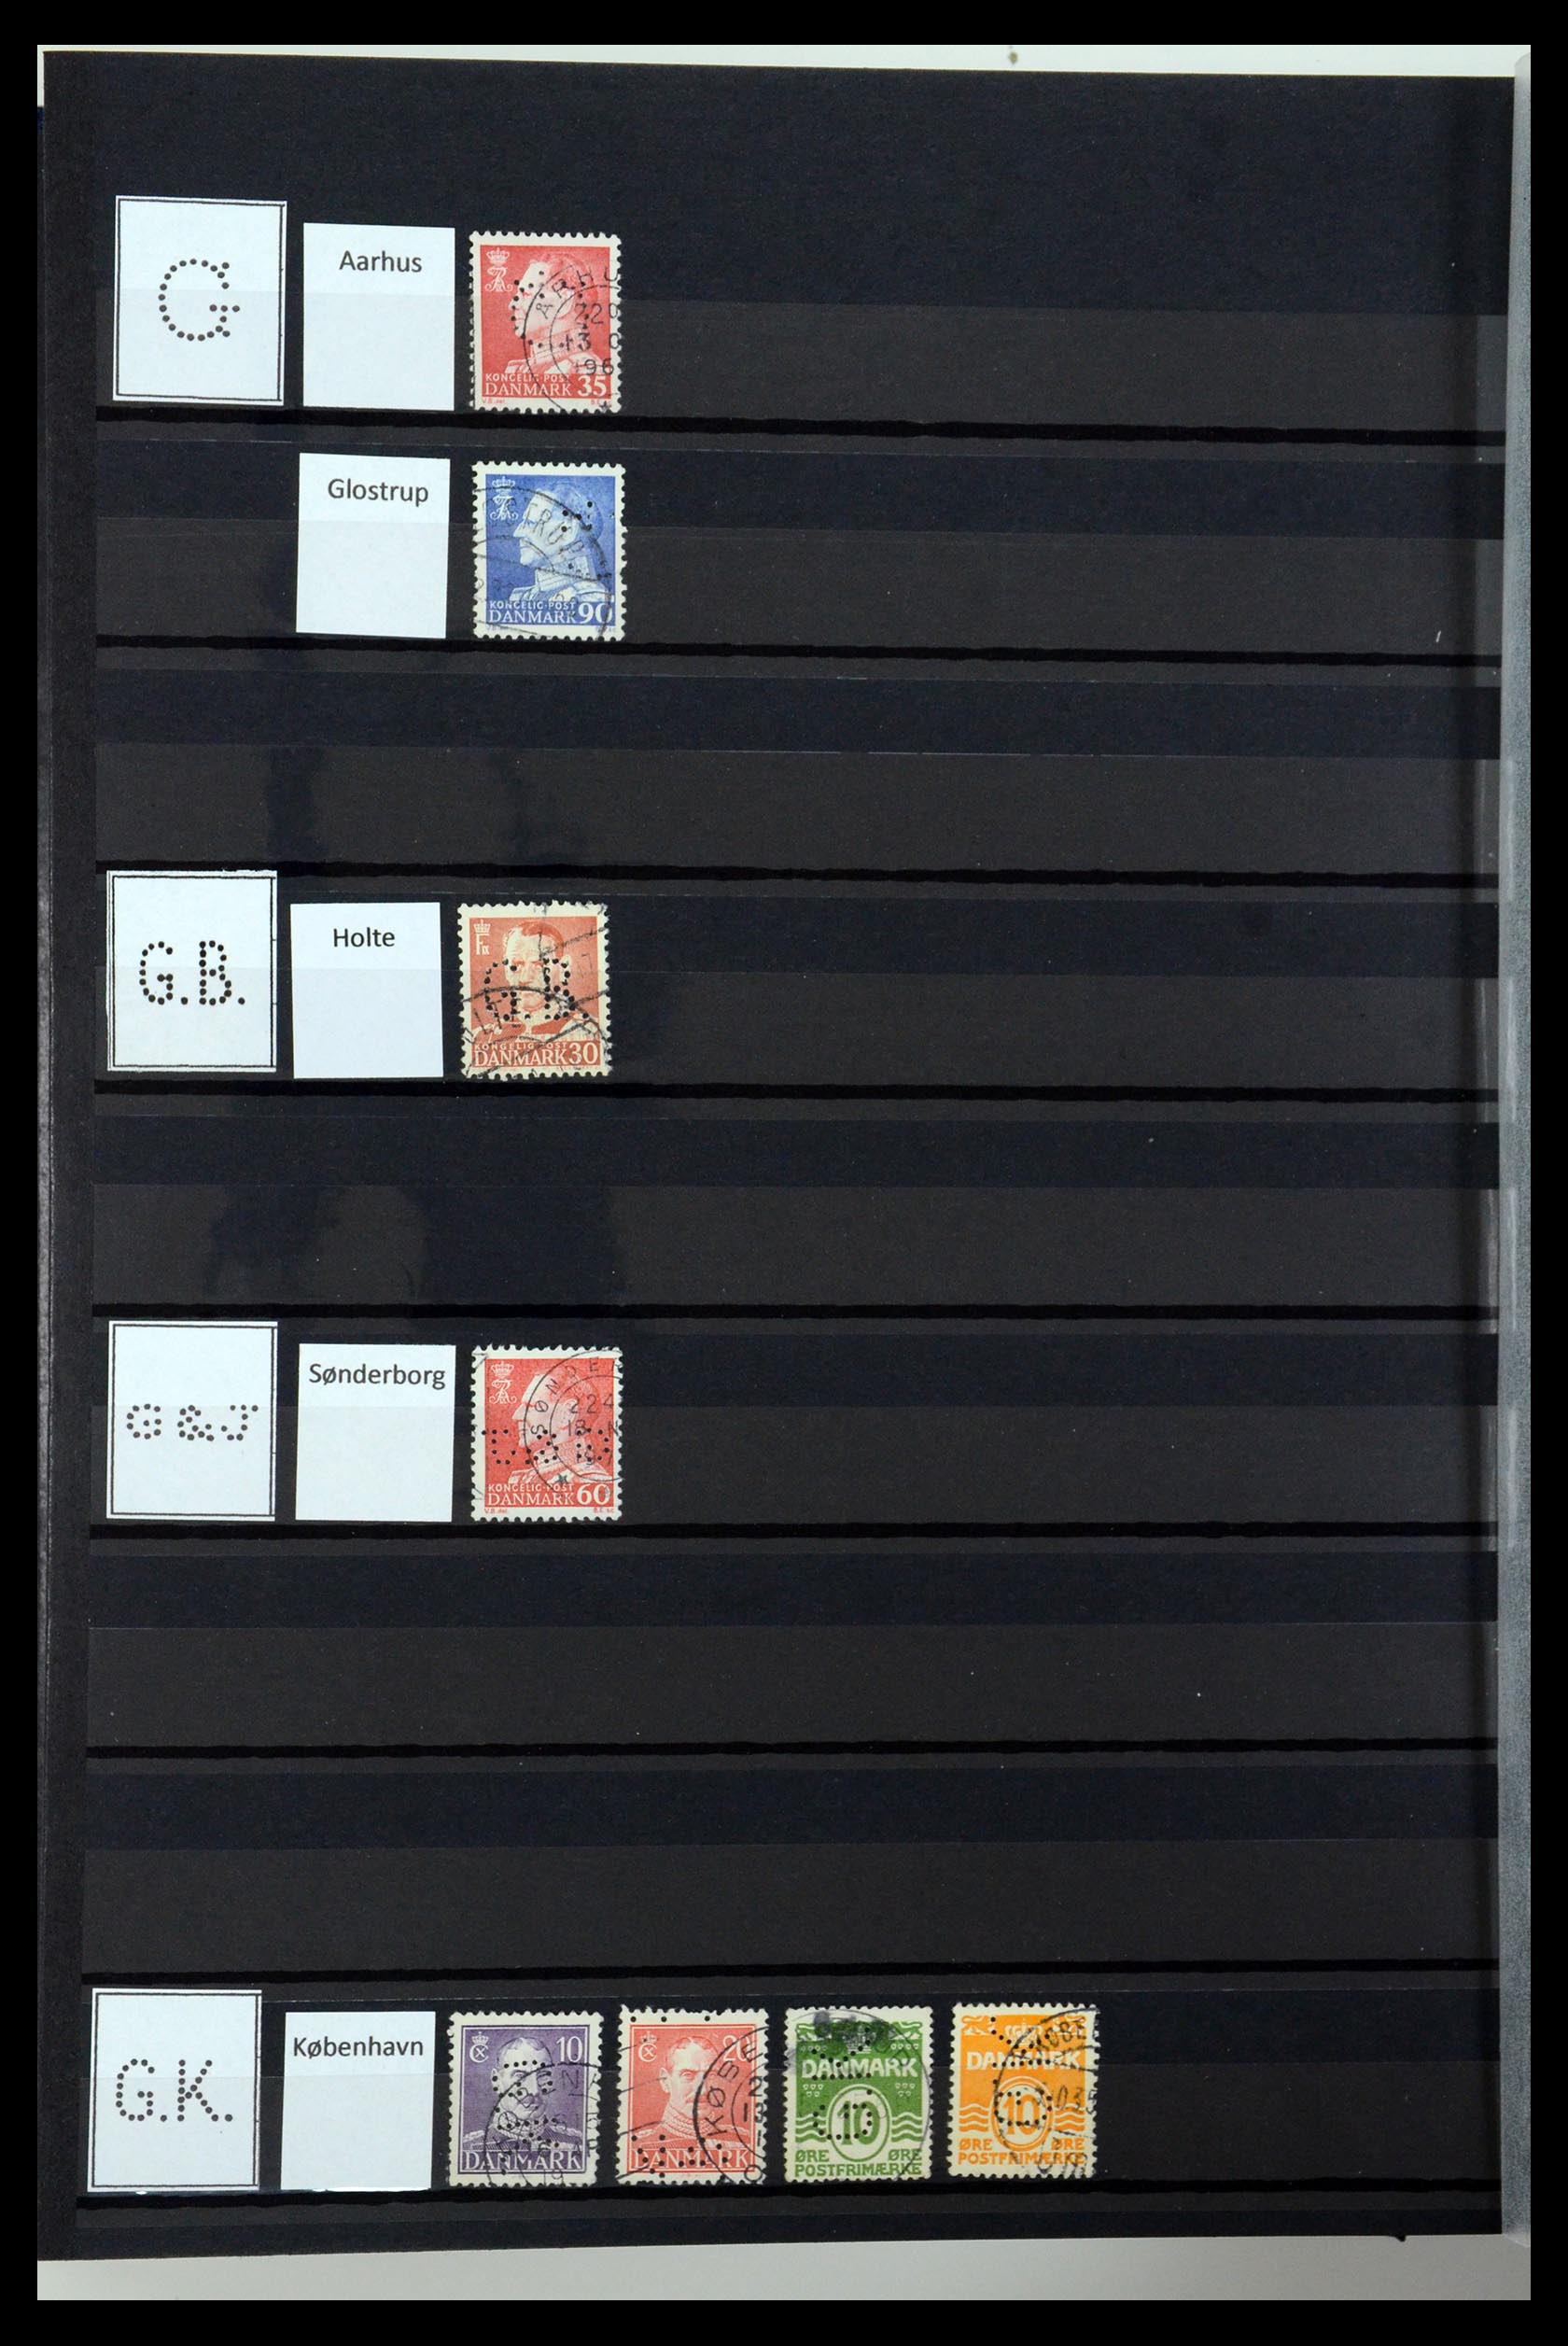 36396 078 - Postzegelverzameling 36396 Denemarken perfins.